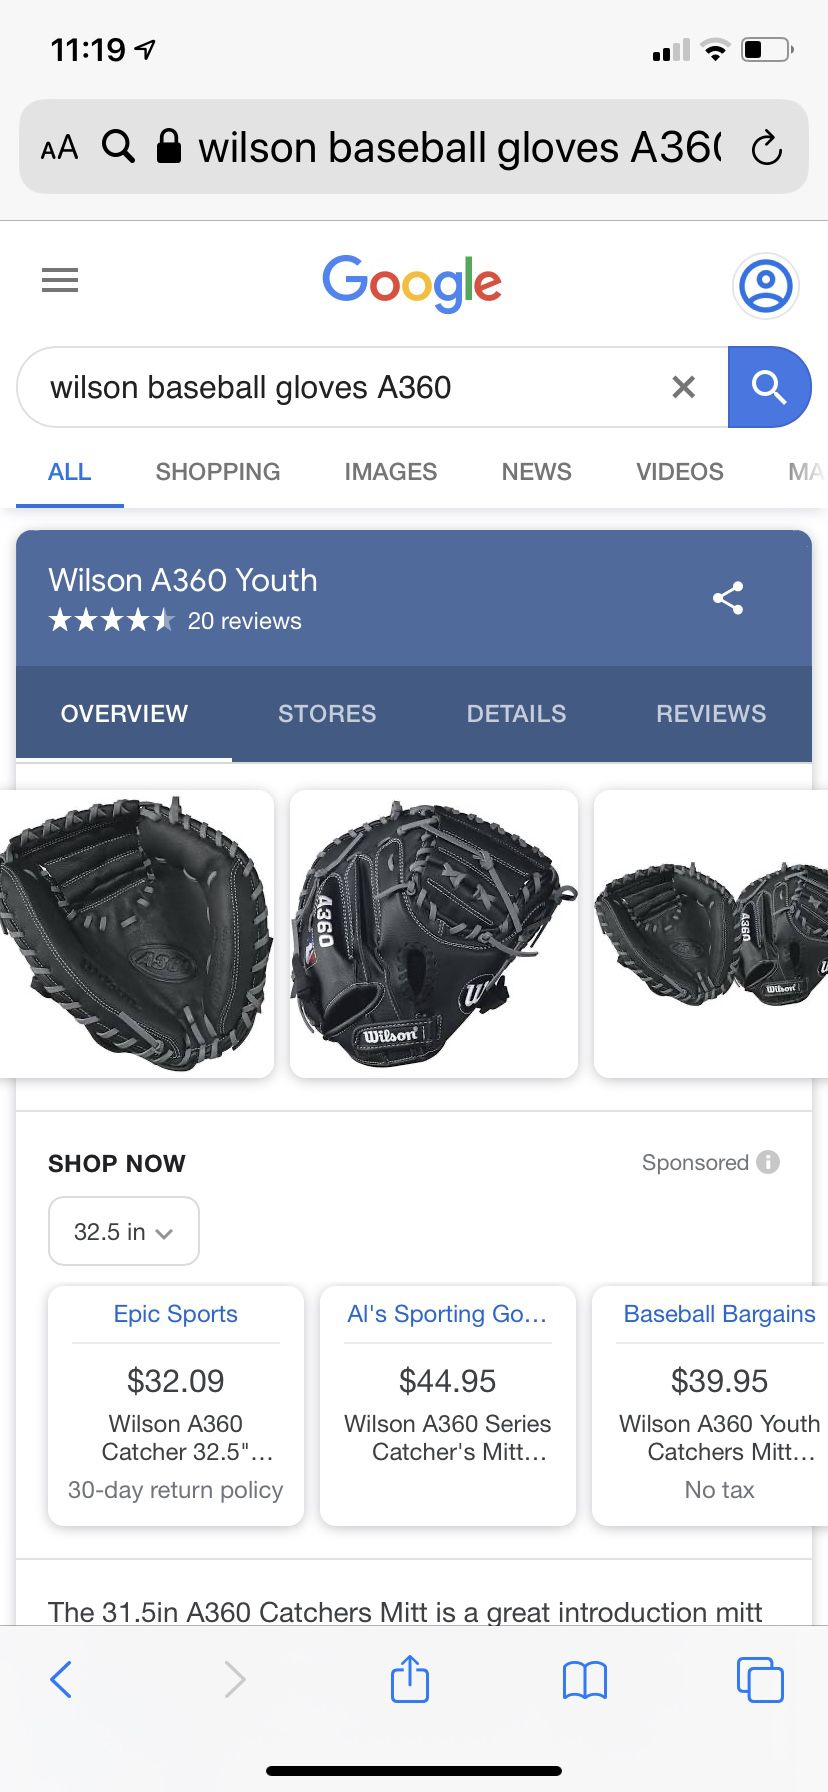 A360 Wilson Baseball Glove